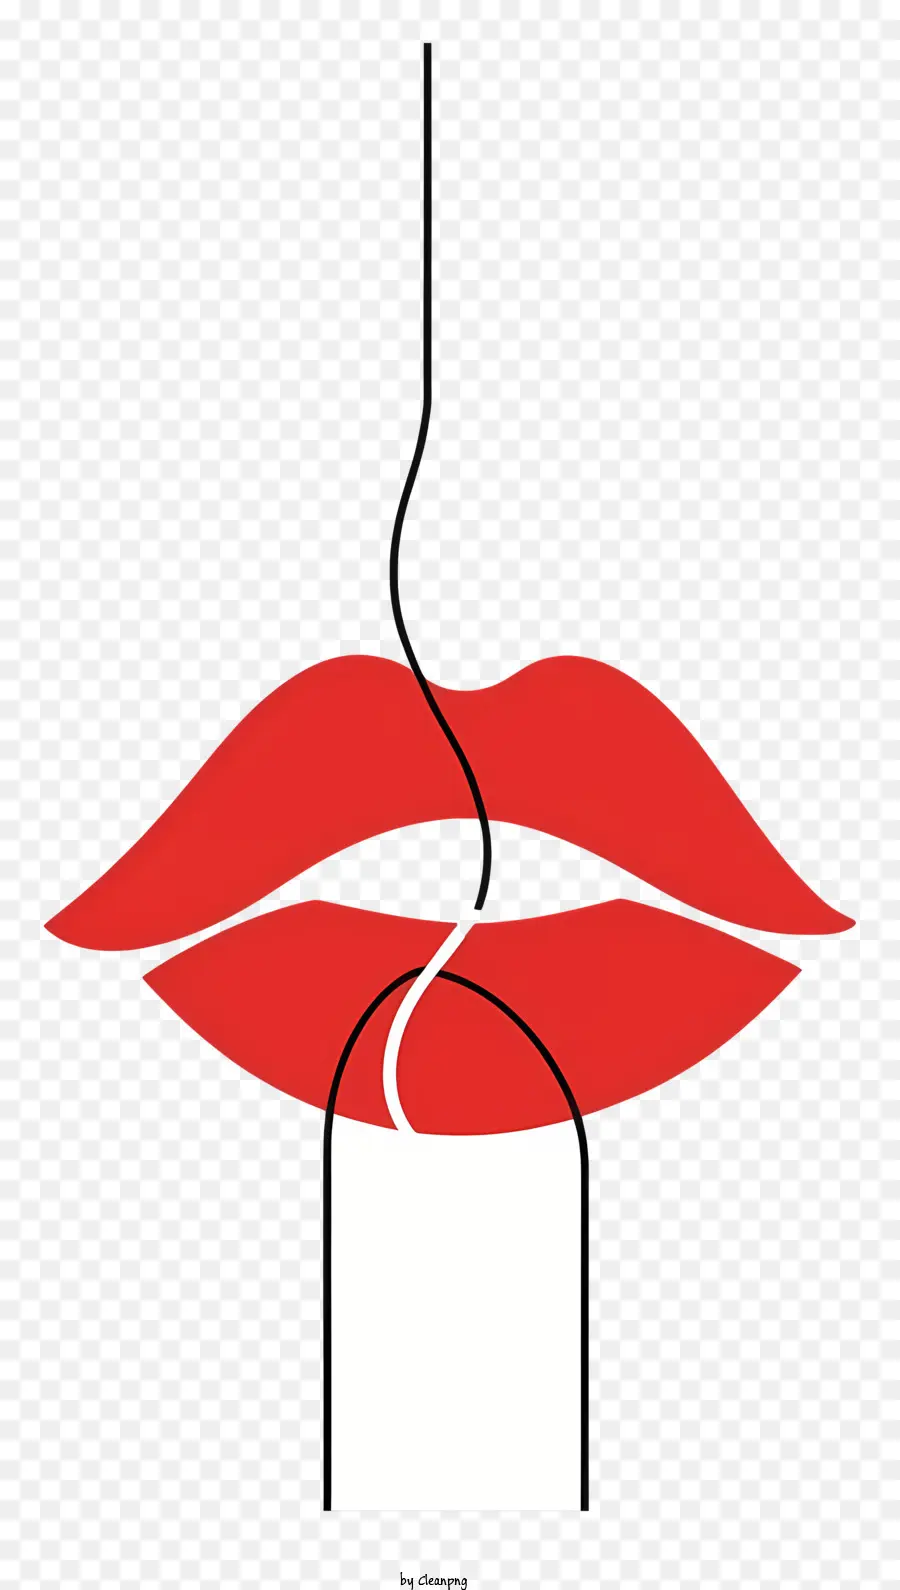 Einladung - Lippen der verführerischen Frau mit roten Lippenstift und Tee